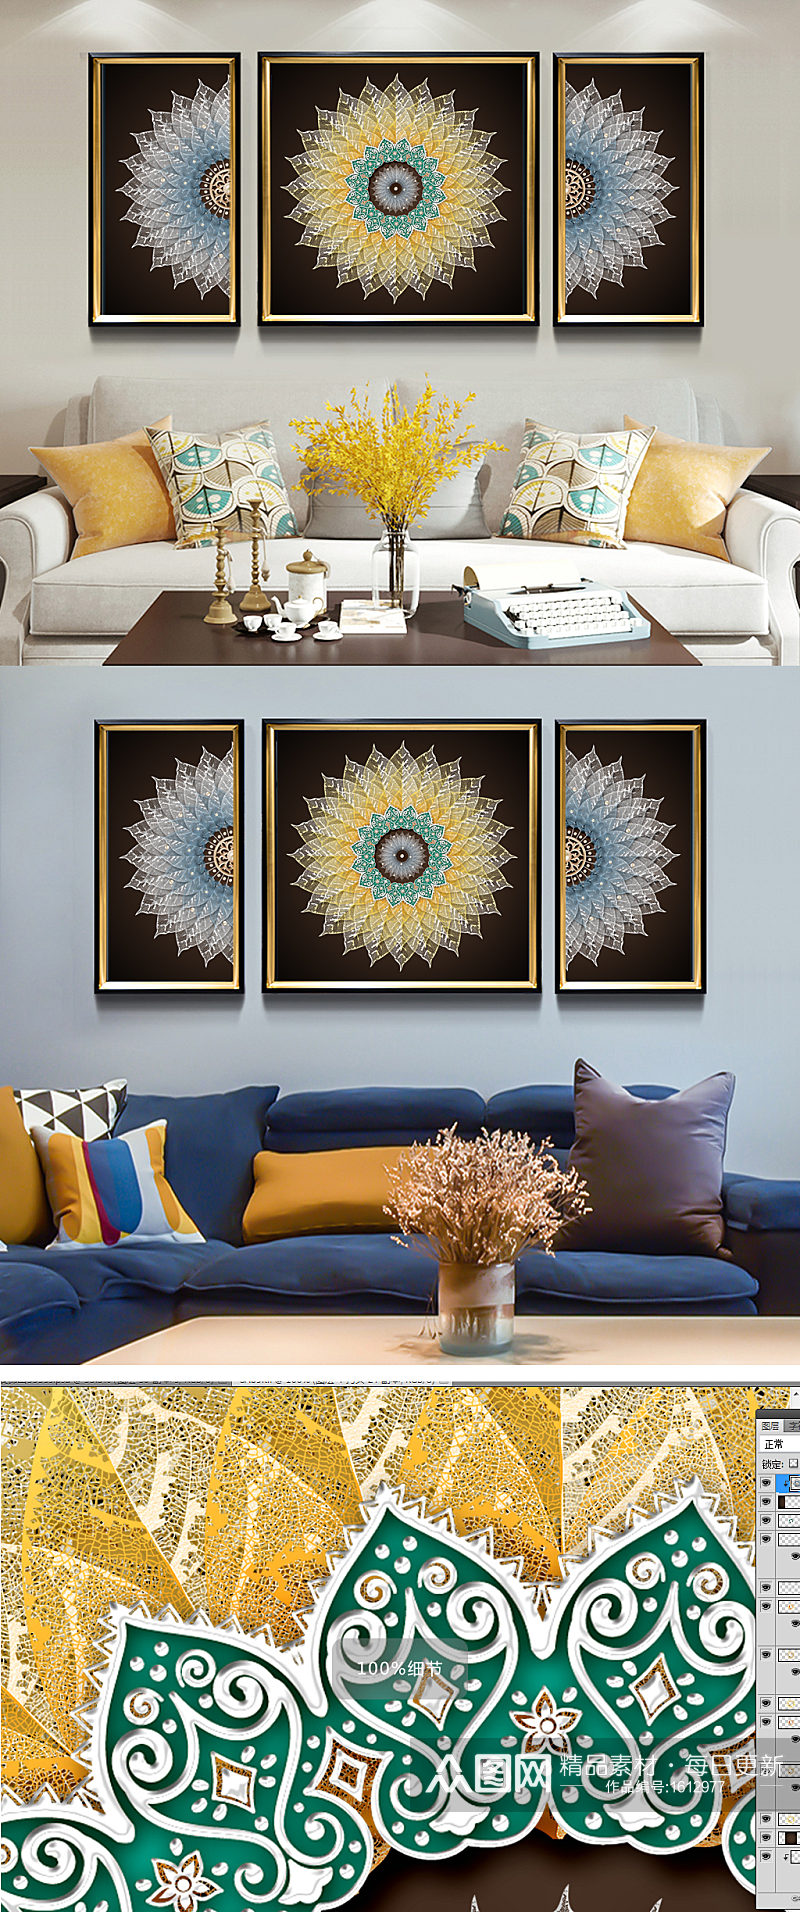 奢华抽象高端复古圆形欧式花纹客厅装饰画素材